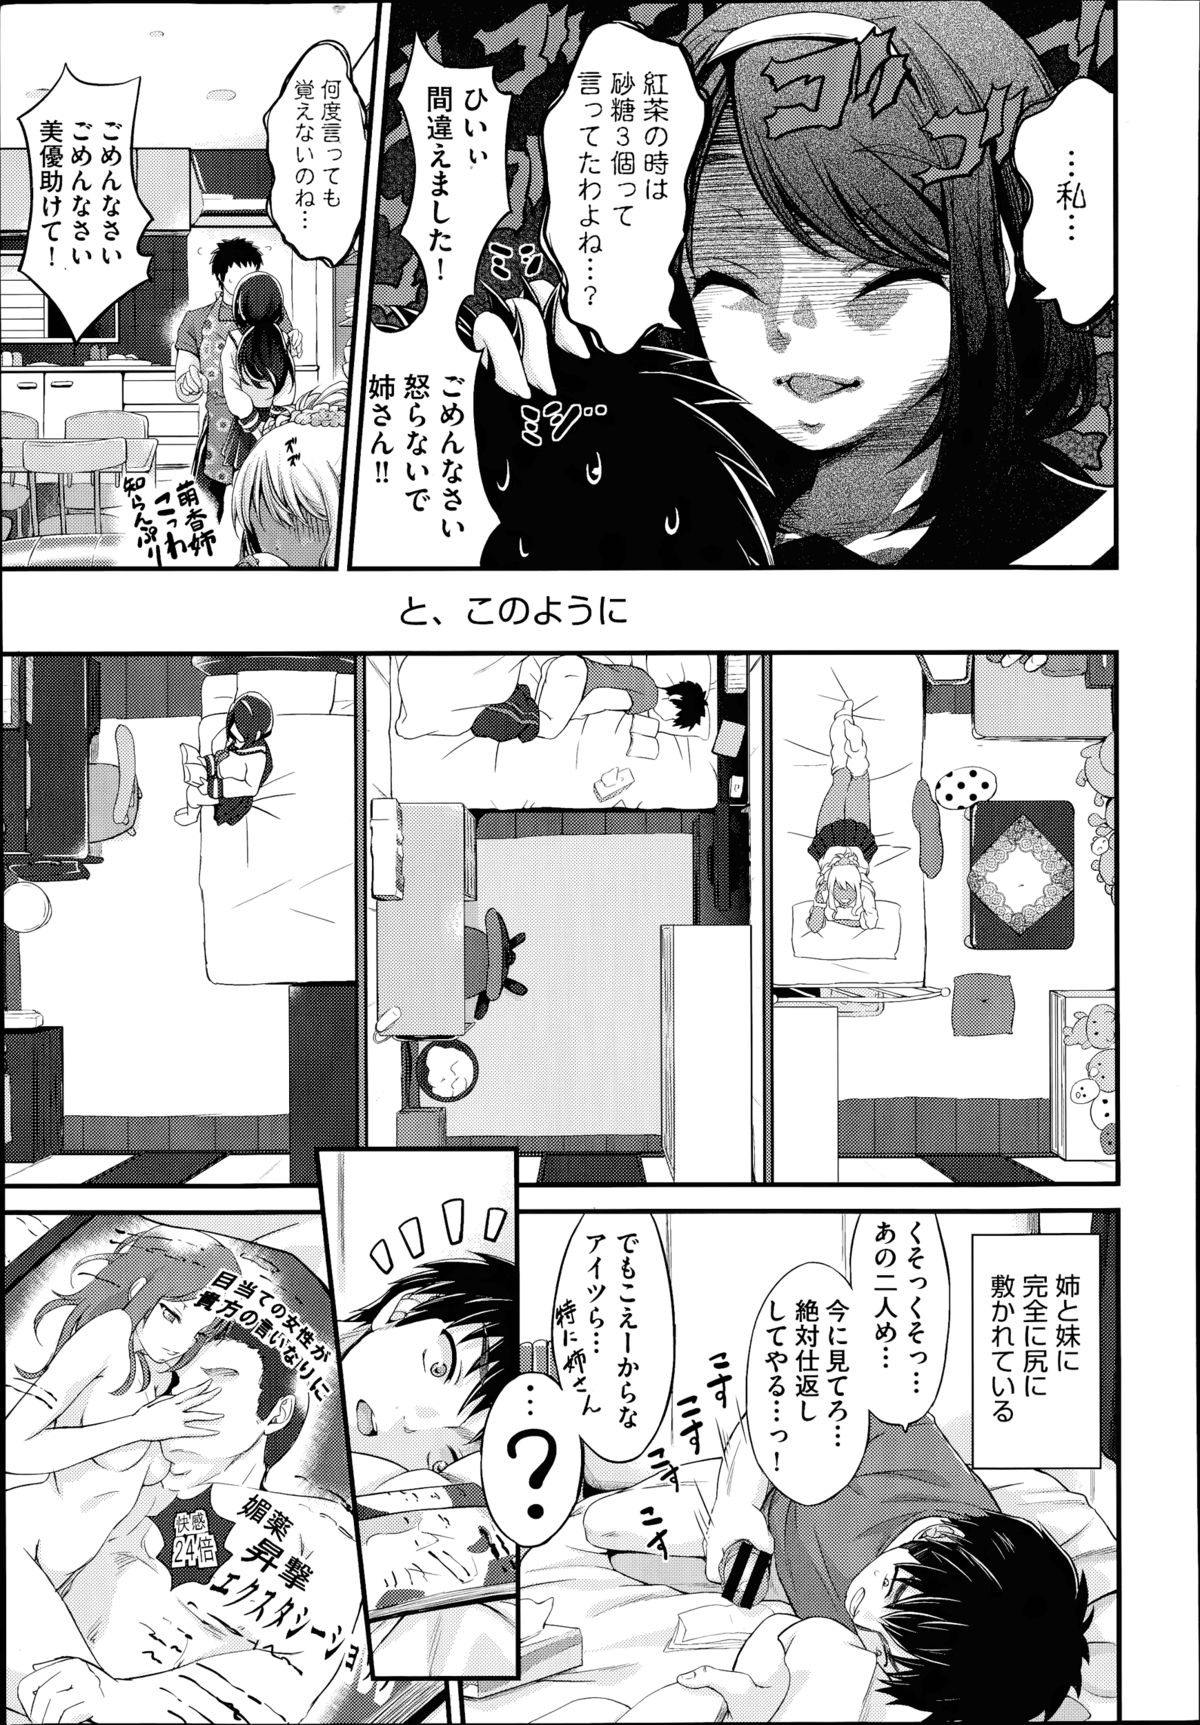 [Kimura Neito] Watashi wa kore de kazoku to nakayoku narimashita. Ch.1-2 page 7 full